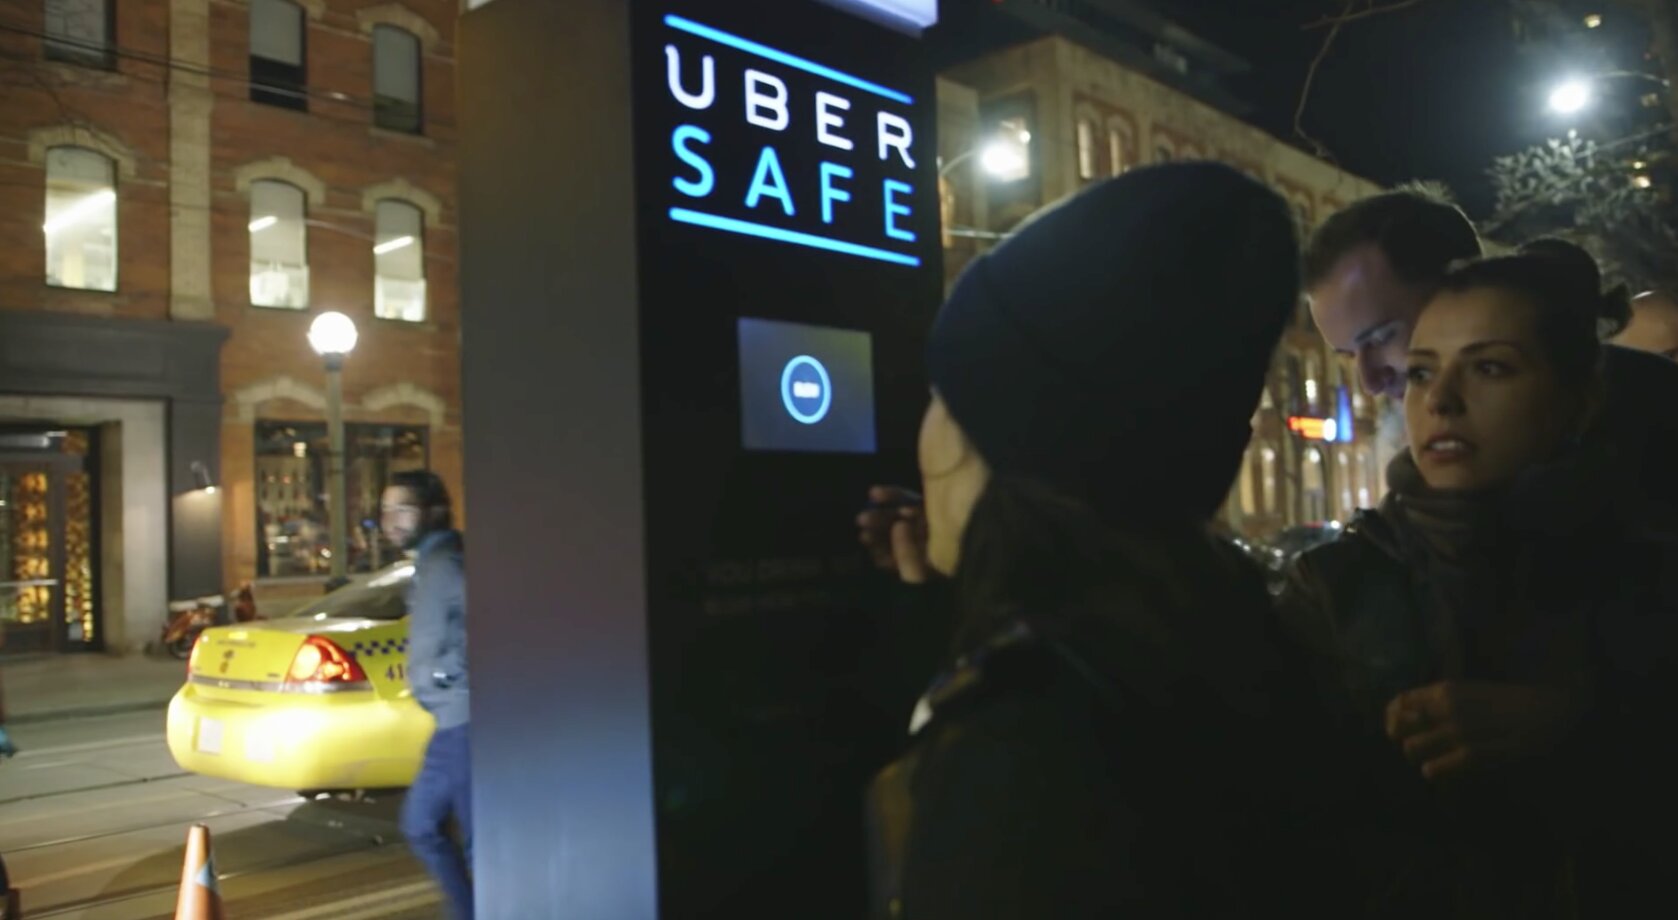  Borne « Uber Safe » pour tester leur alcoolémie à l’aide d’un éthylotest intégré